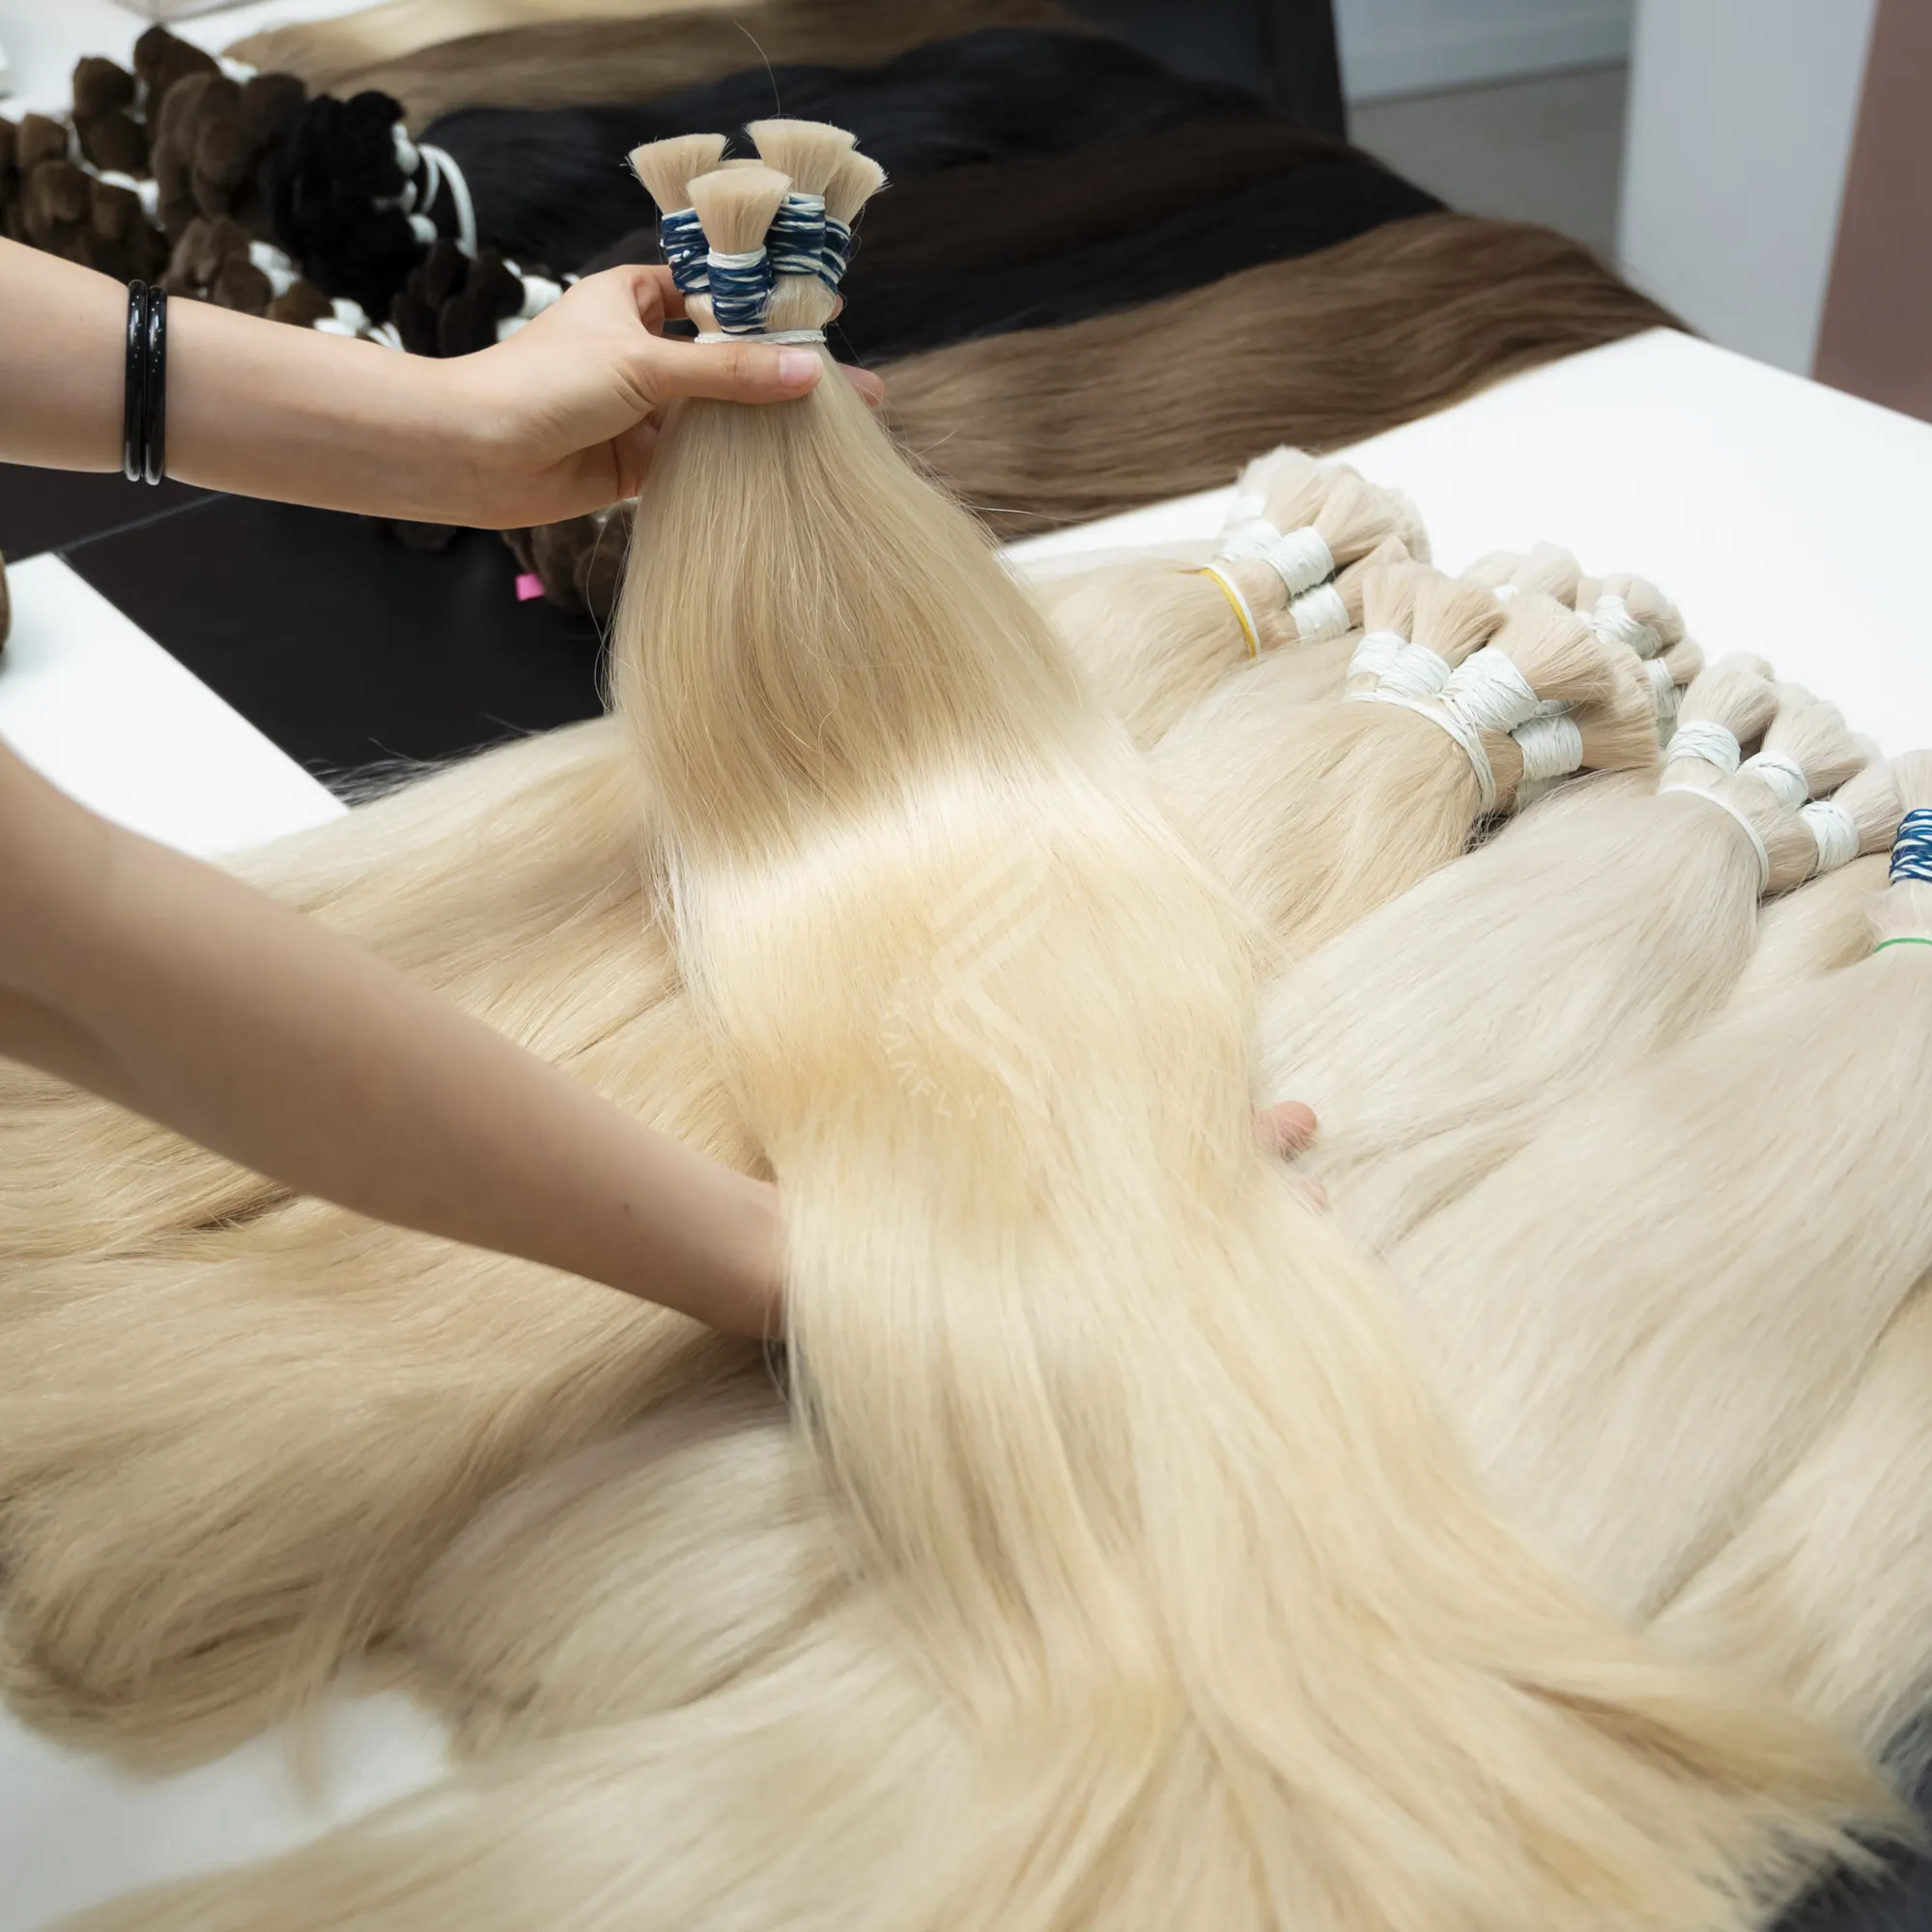 थोक कुंवारी बाल विक्रेताओं बाल थोक, Hairdressers और सैलून के लिए सस्ते बाल सुनहरे बालों के बंडलों